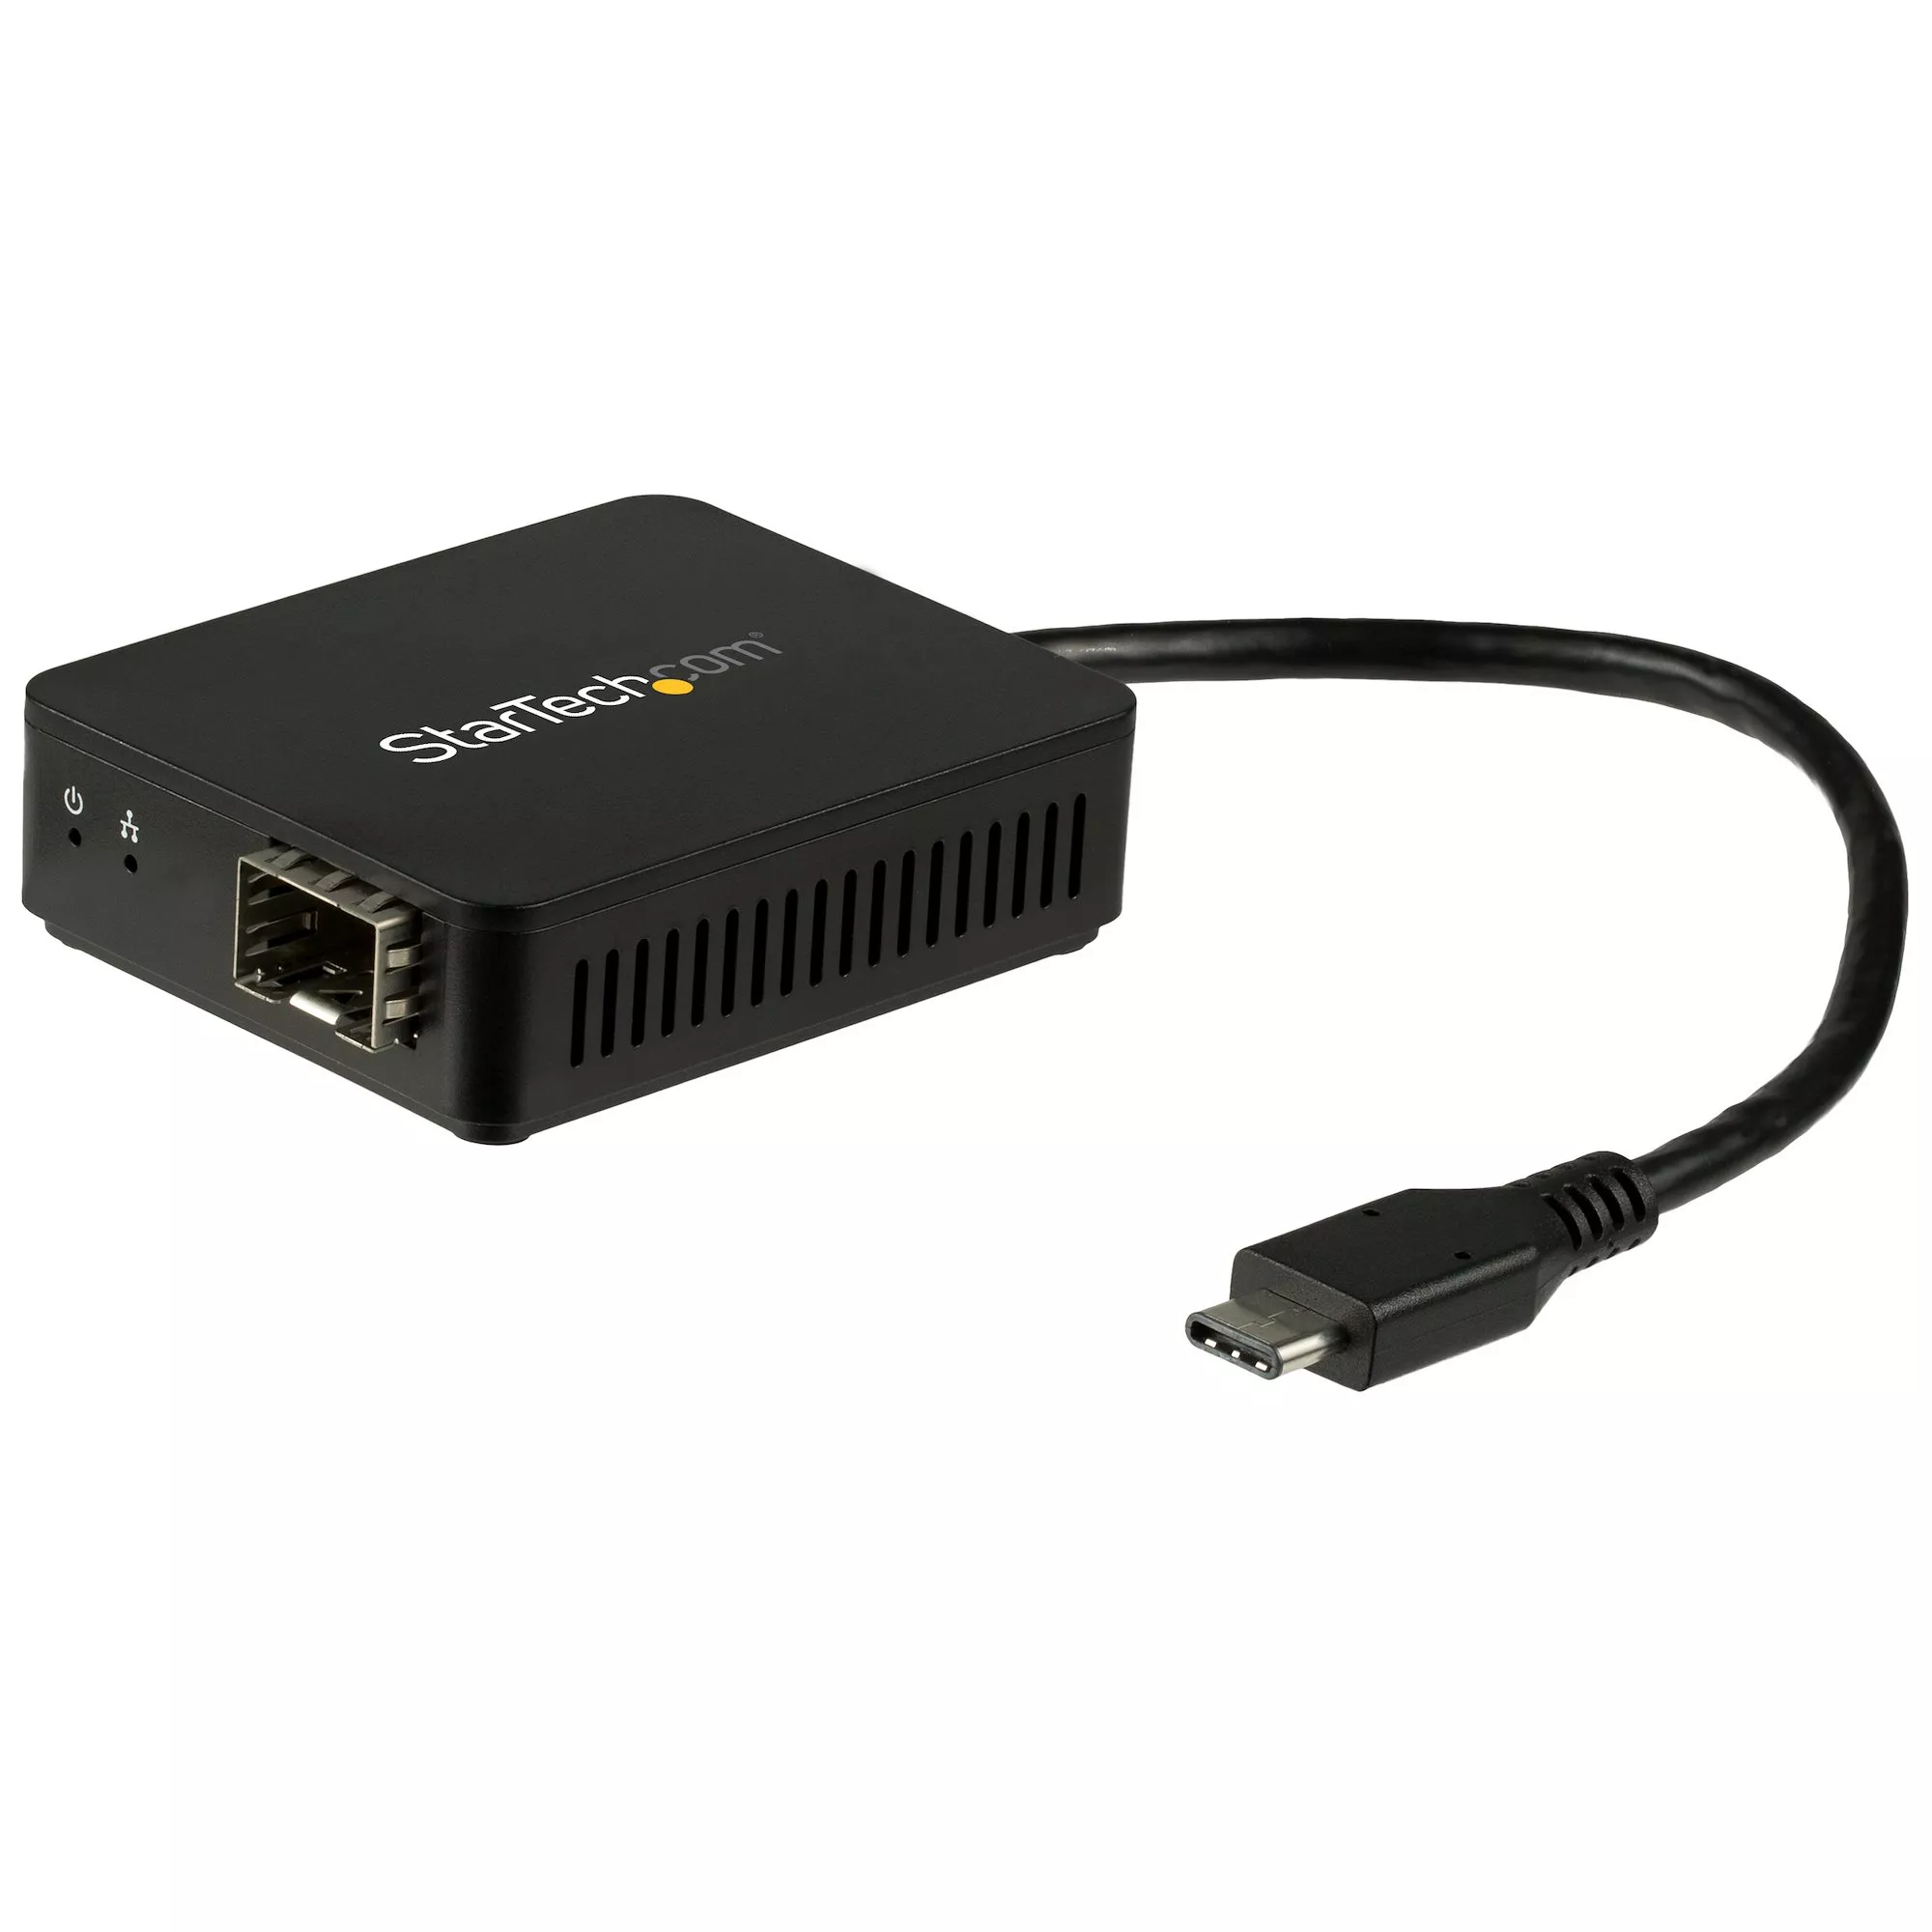 Achat StarTech.com Adaptateur réseau USB-C vers fibre optique au meilleur prix